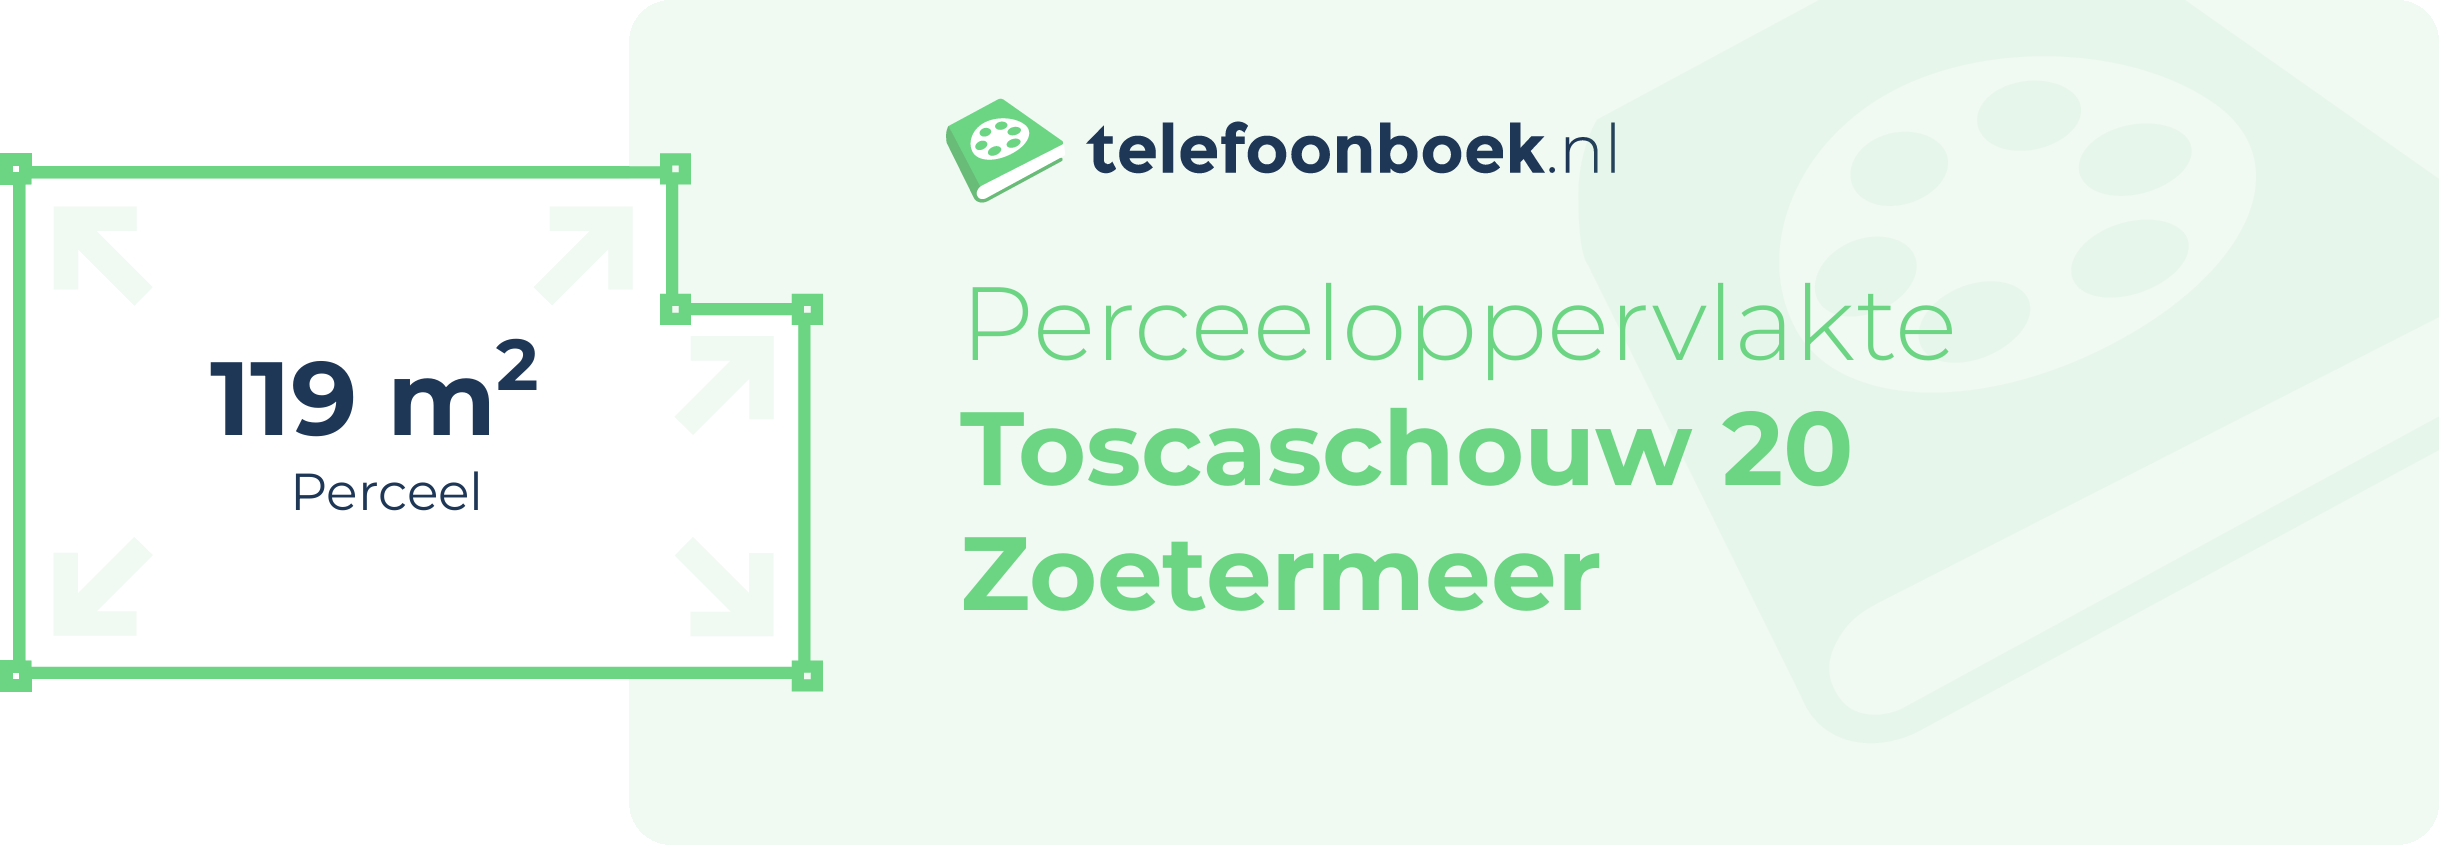 Perceeloppervlakte Toscaschouw 20 Zoetermeer